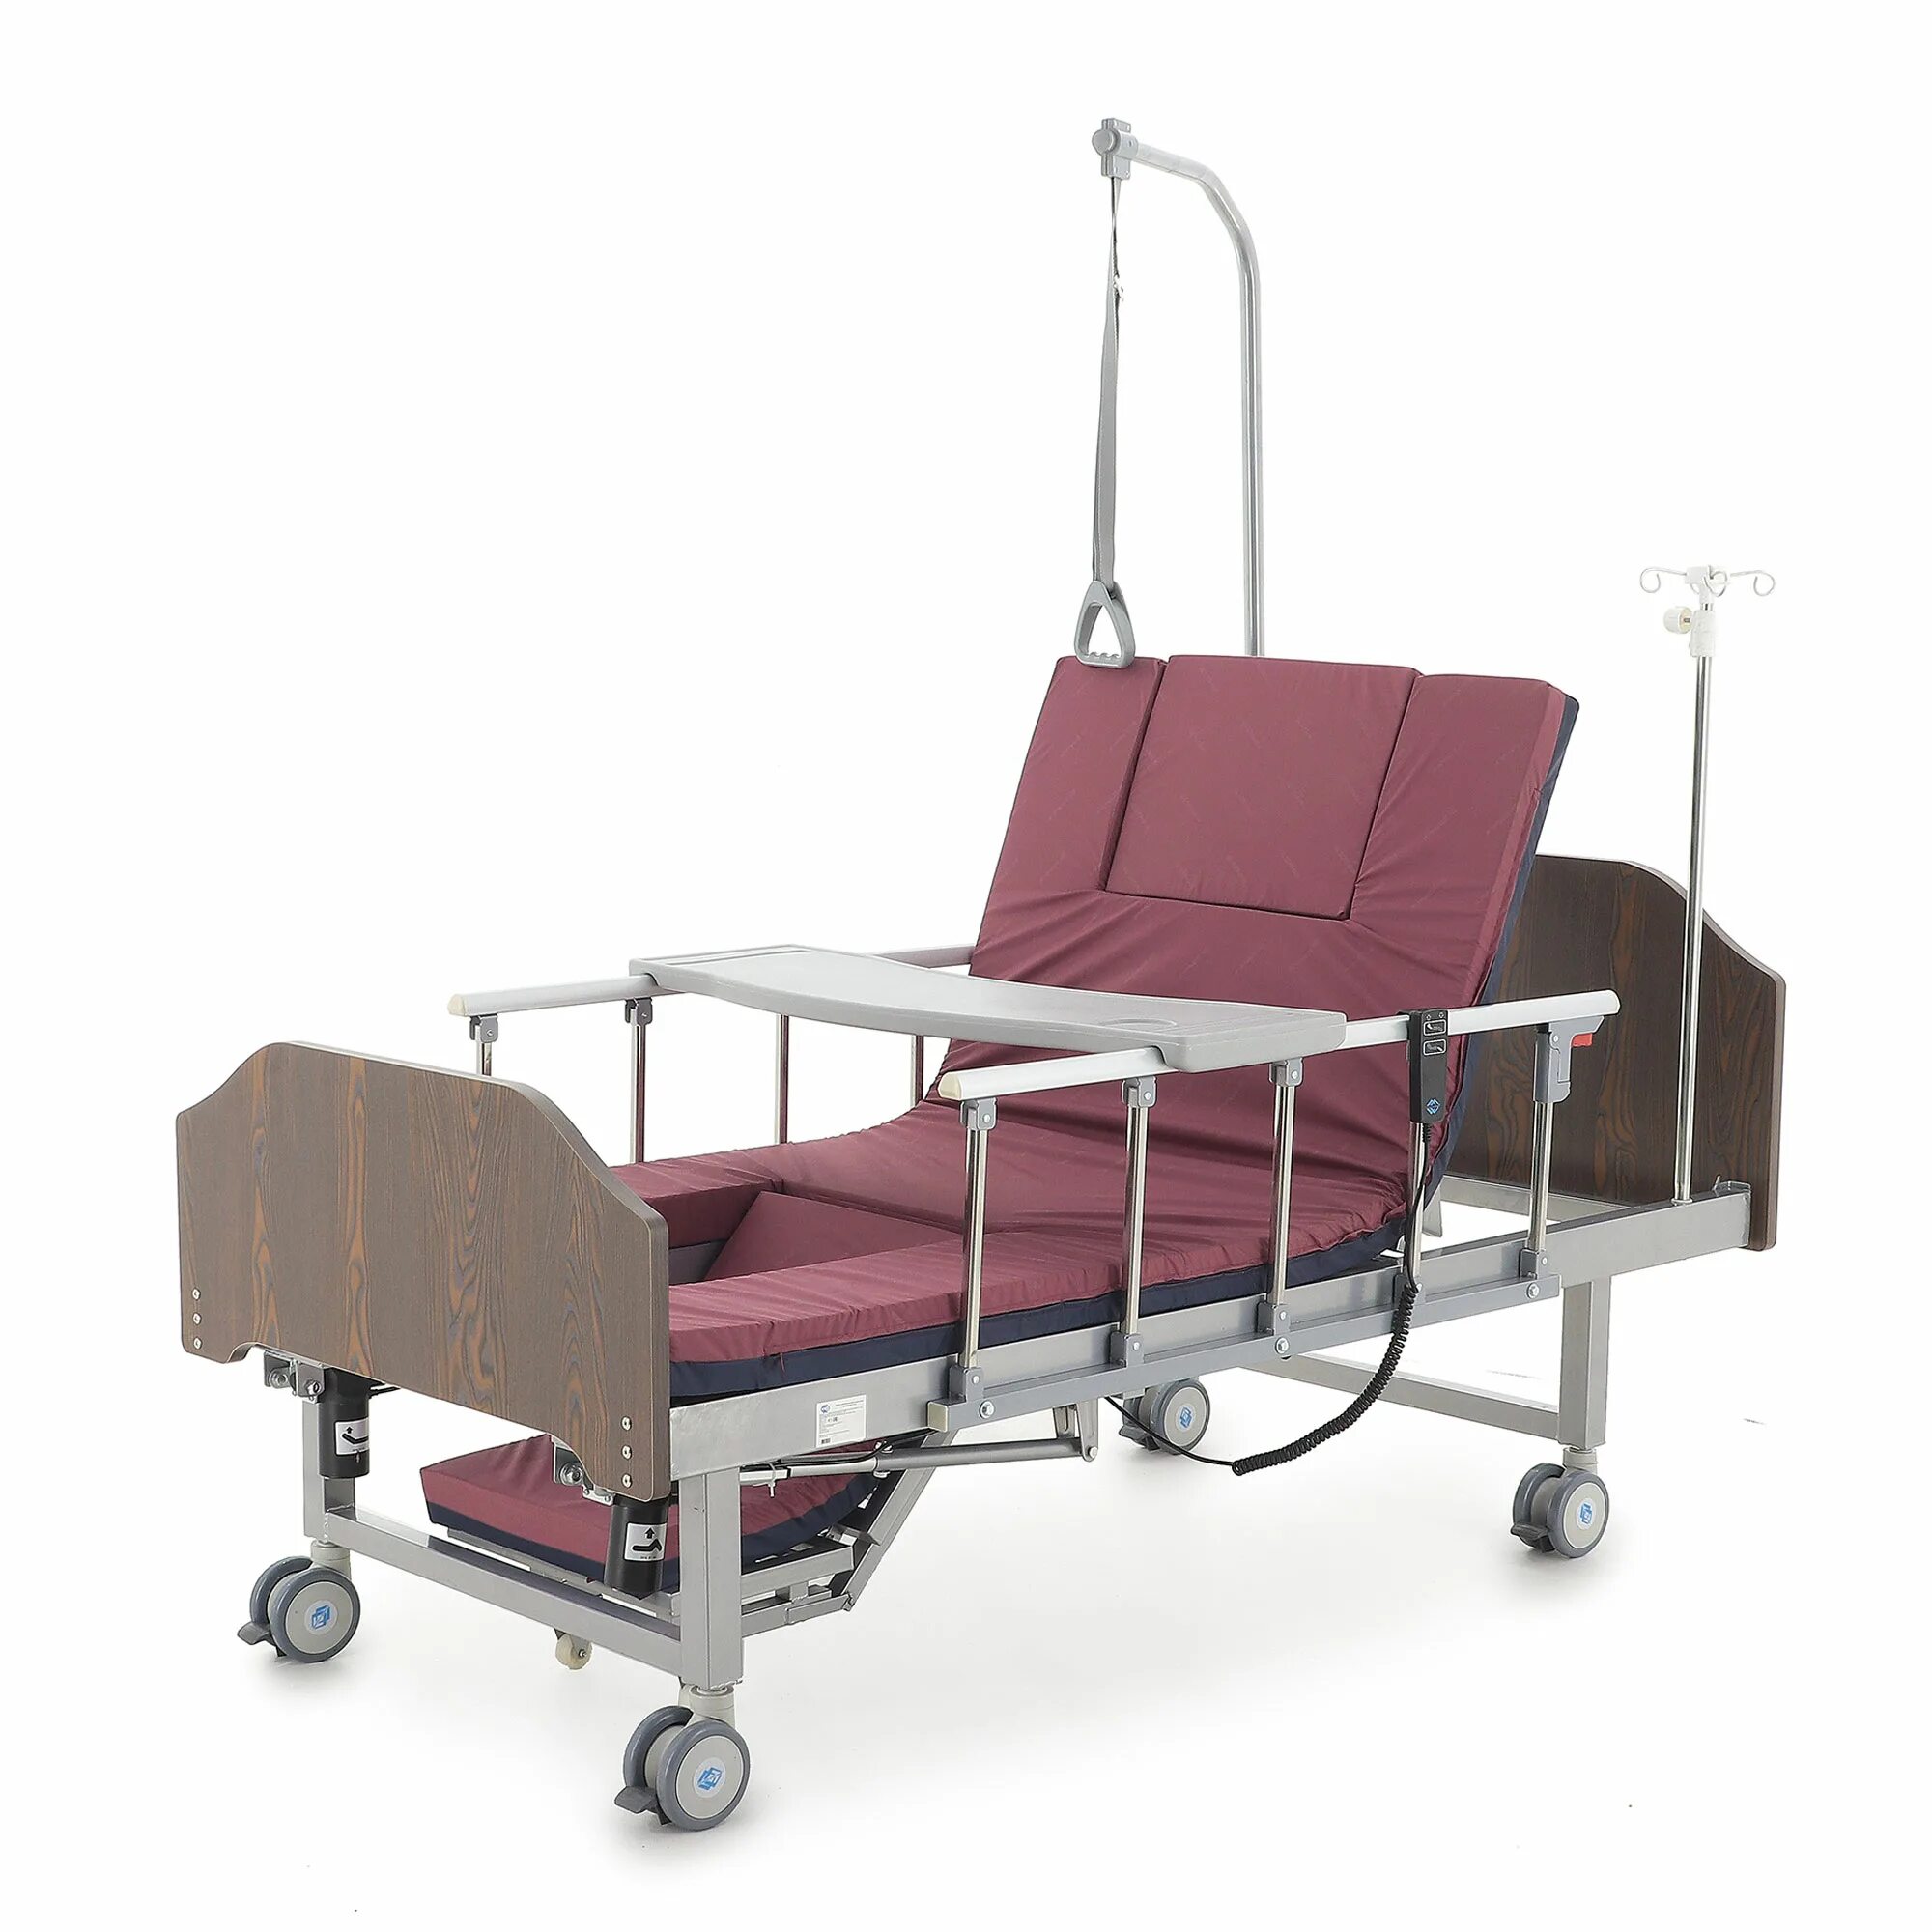 Yg-6 кровать медицинская. Кровать функциональная медицинская yg-6 (мм-191н). Кровать функциональная медицинская механическая yg-6. Кровать электрическая yg-2 (ме-2028н-10. Купить кровать для лежачих больных с электроприводом